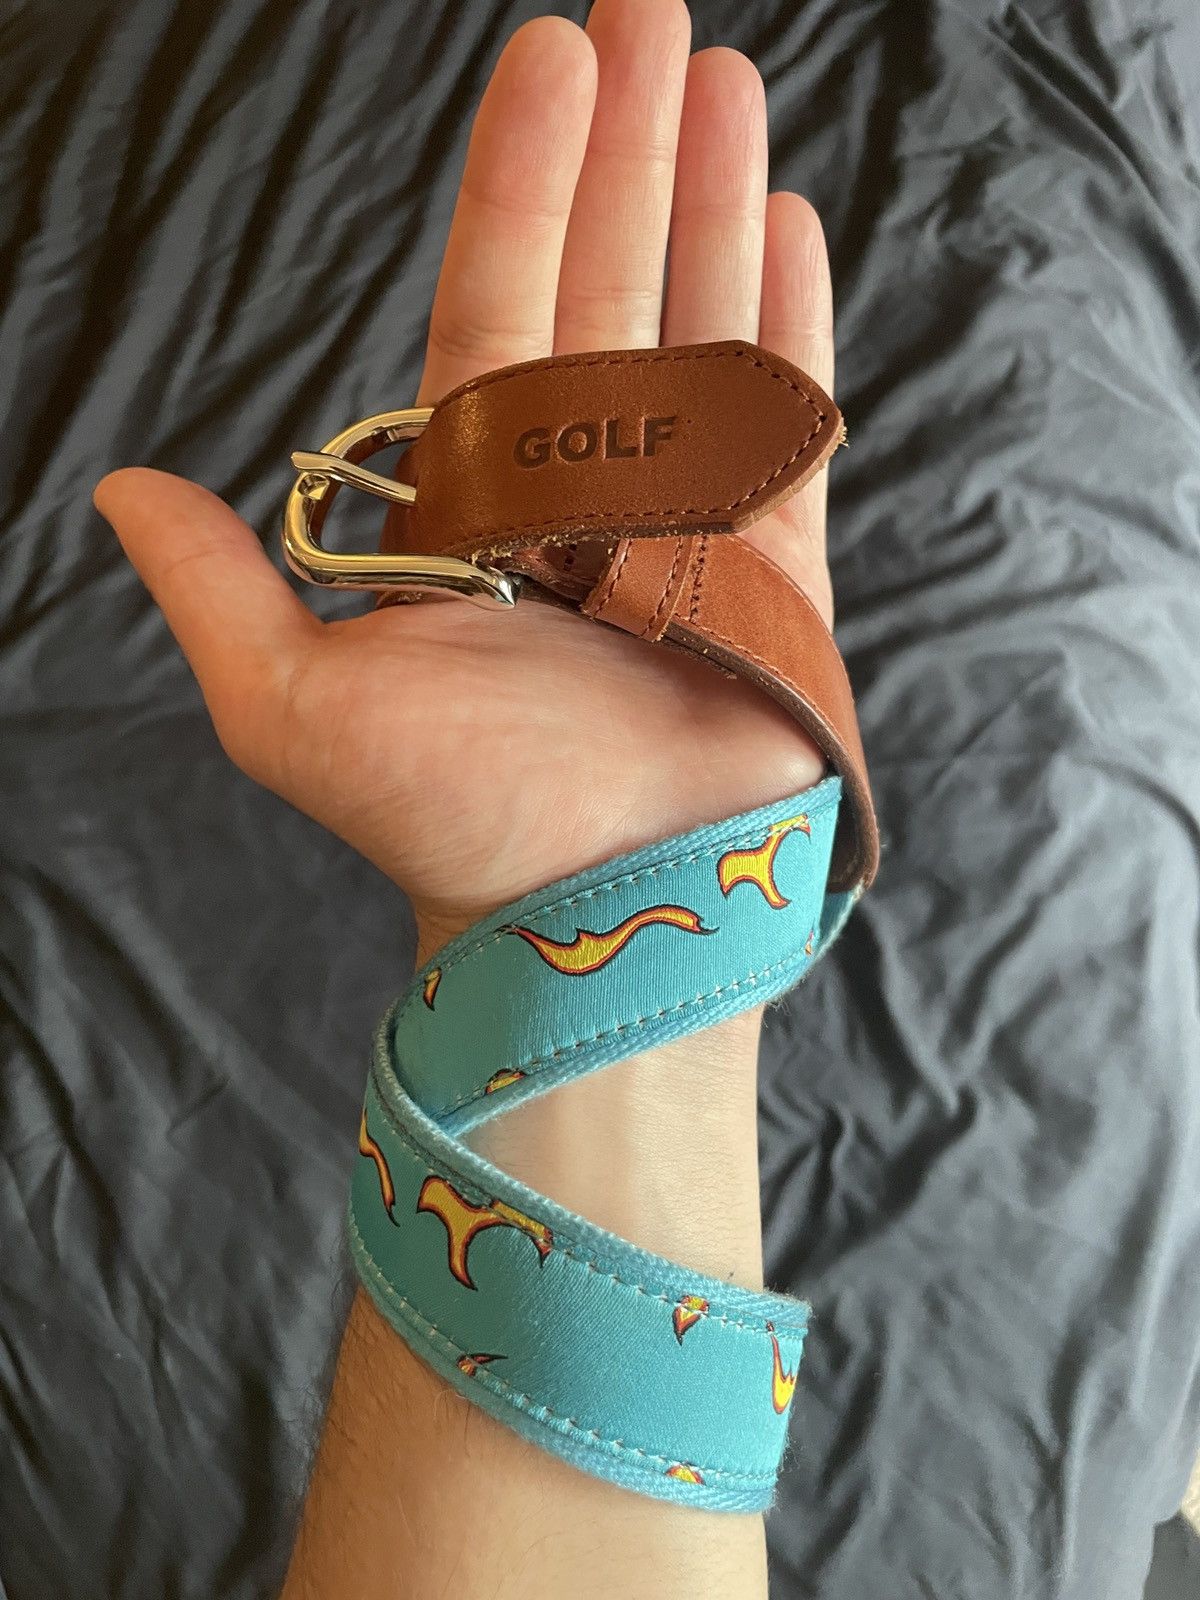 Golf Wang Golf Wang Blue Flame Belt Size 28 - 1 Preview